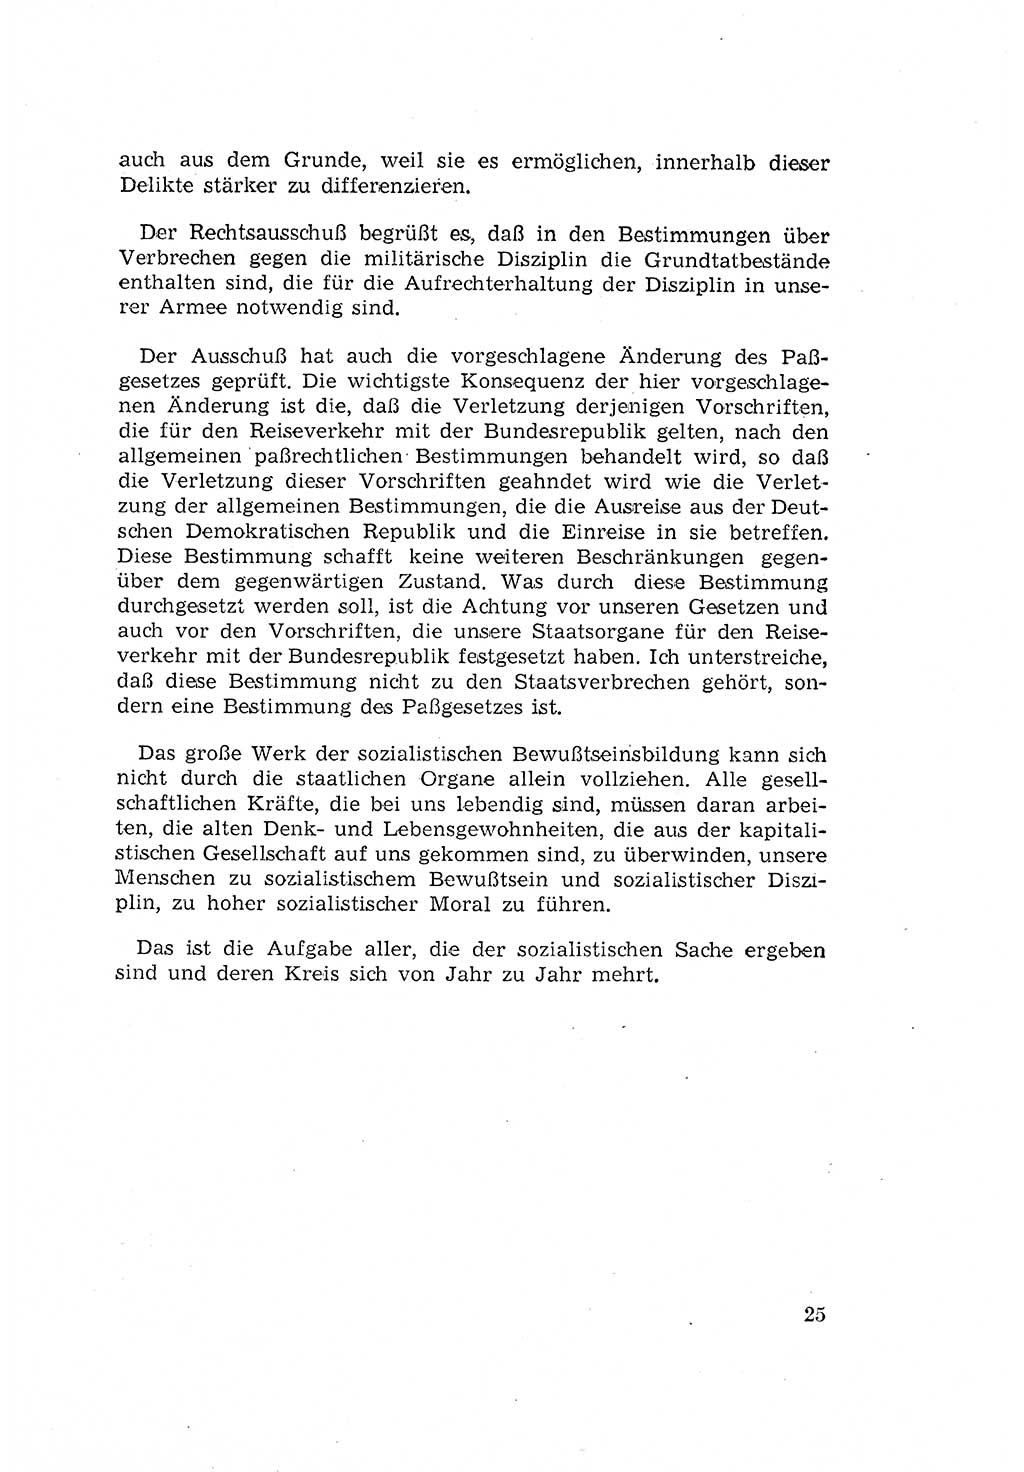 Zum Erlaß des Gesetzes zur Ergänzung des Strafgesetzbuches (StGB), Strafergänzungsgesetz (StEG) [Deutsche Demokratische Republik (DDR)] 1957, Seite 25 (StGB StEG DDR 1957, S. 25)